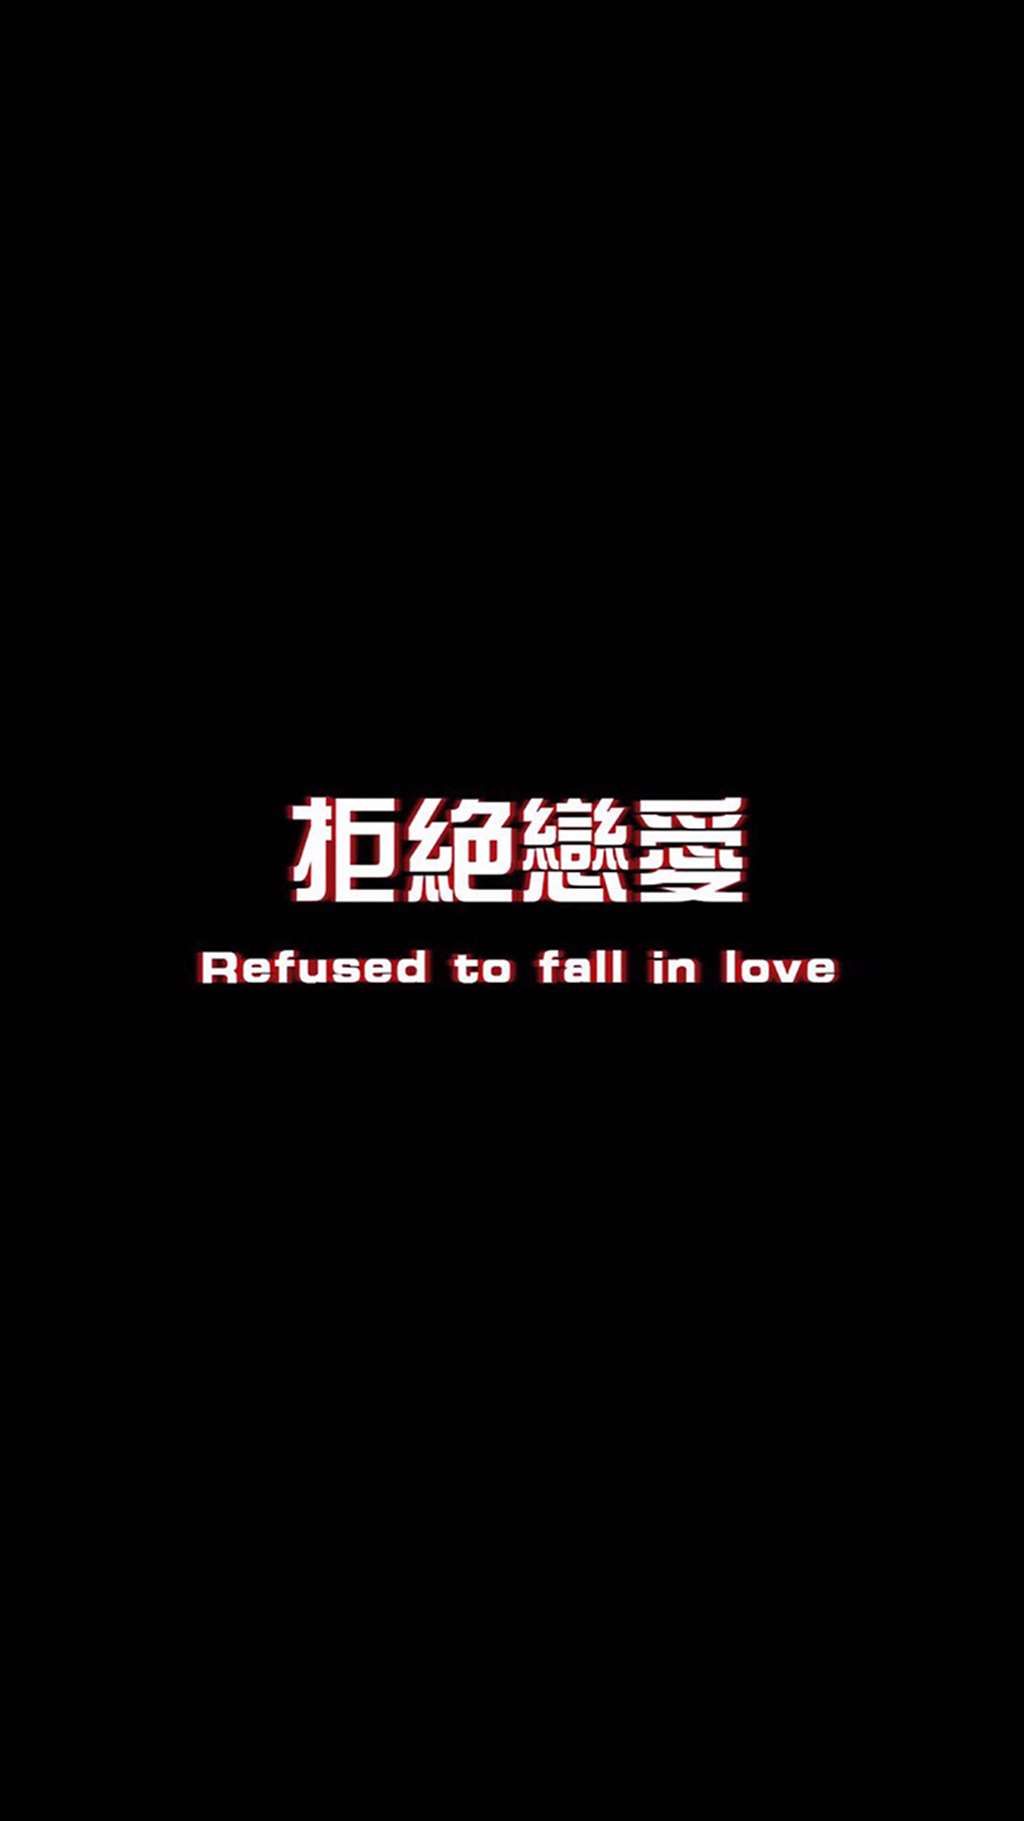 拒绝恋爱 refused to fall in love